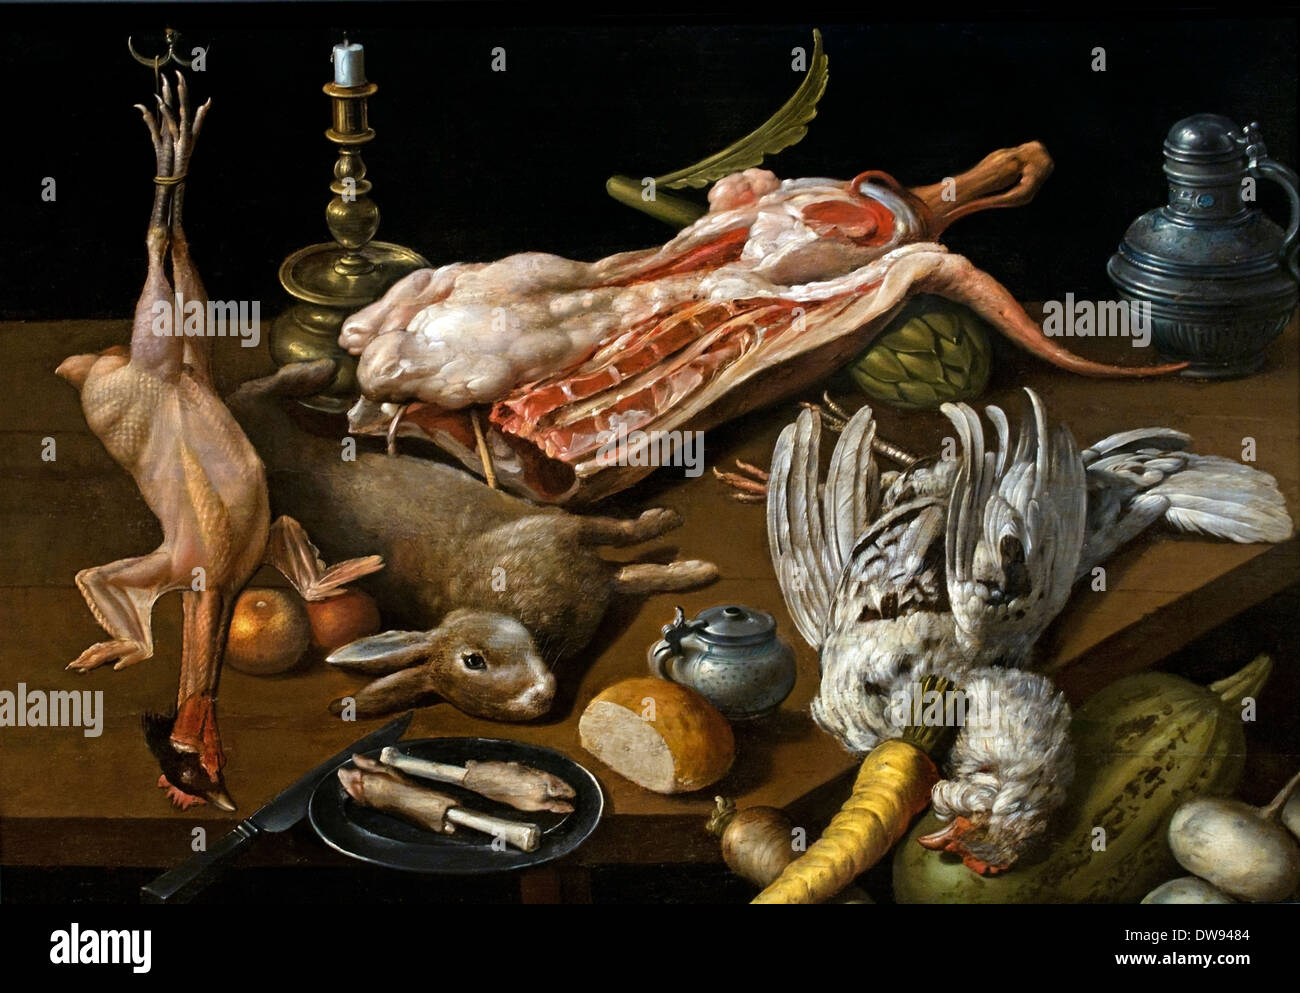 Nature Morte de victuailles - Still life with food by Jan willemsz van der Wilde 1586-1636  Dutch Netherlands Stock Photo